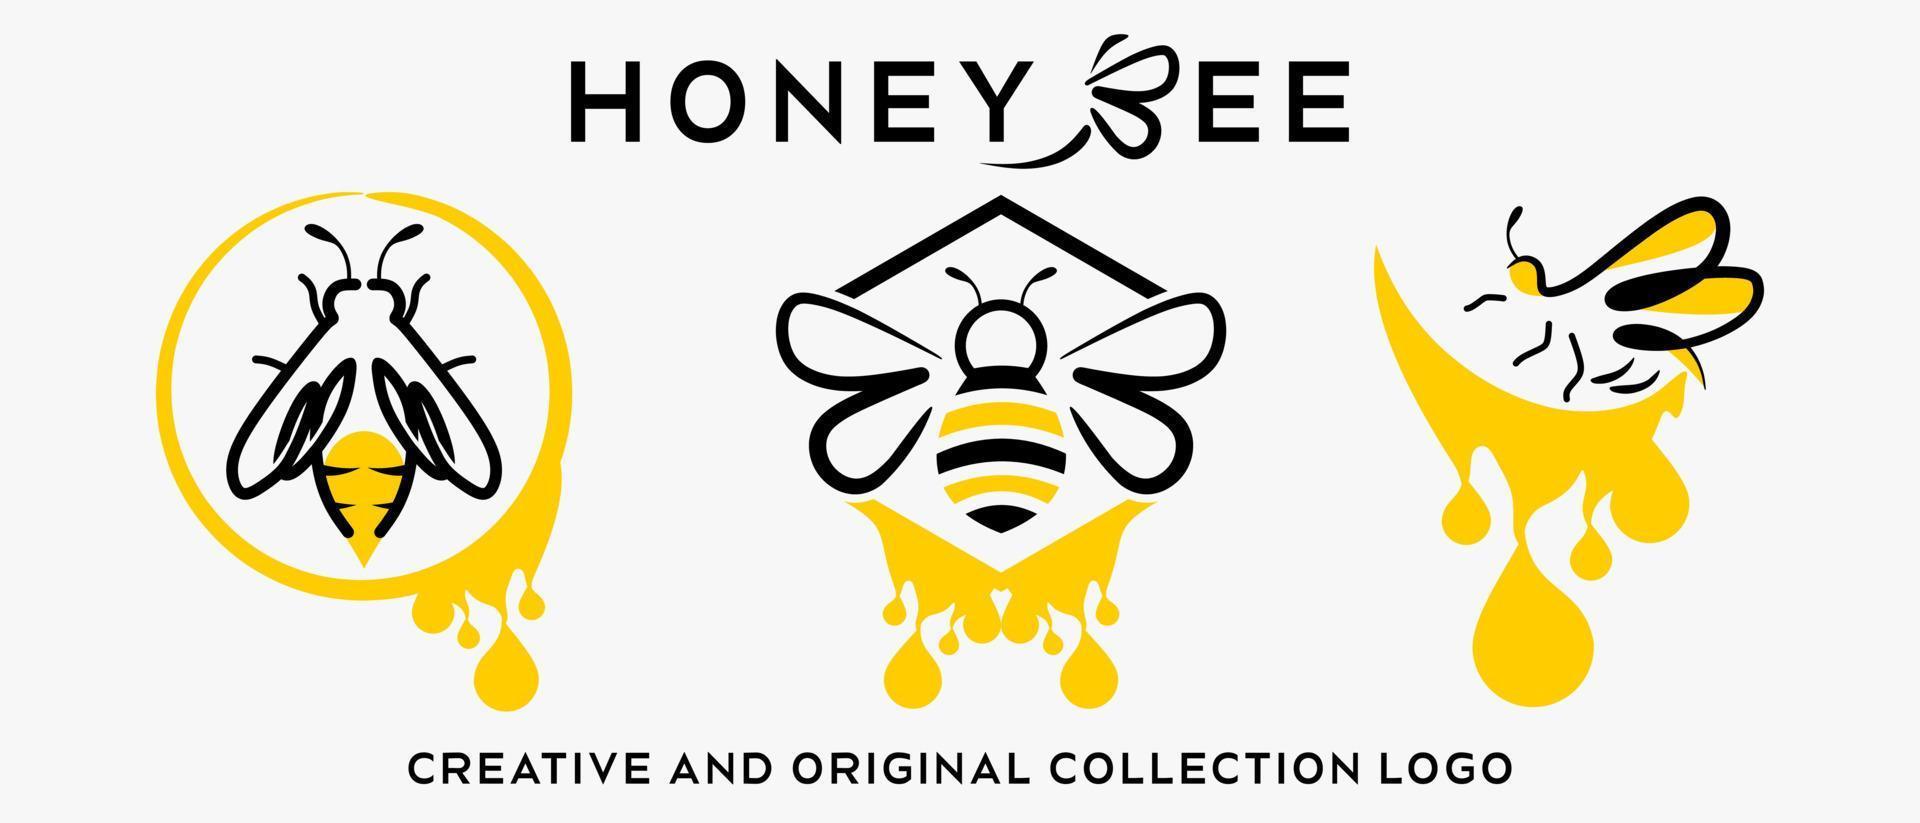 une collection de logos d'abeilles au style moderne, élégant et créatif. vecteur d'illustration de logo premium